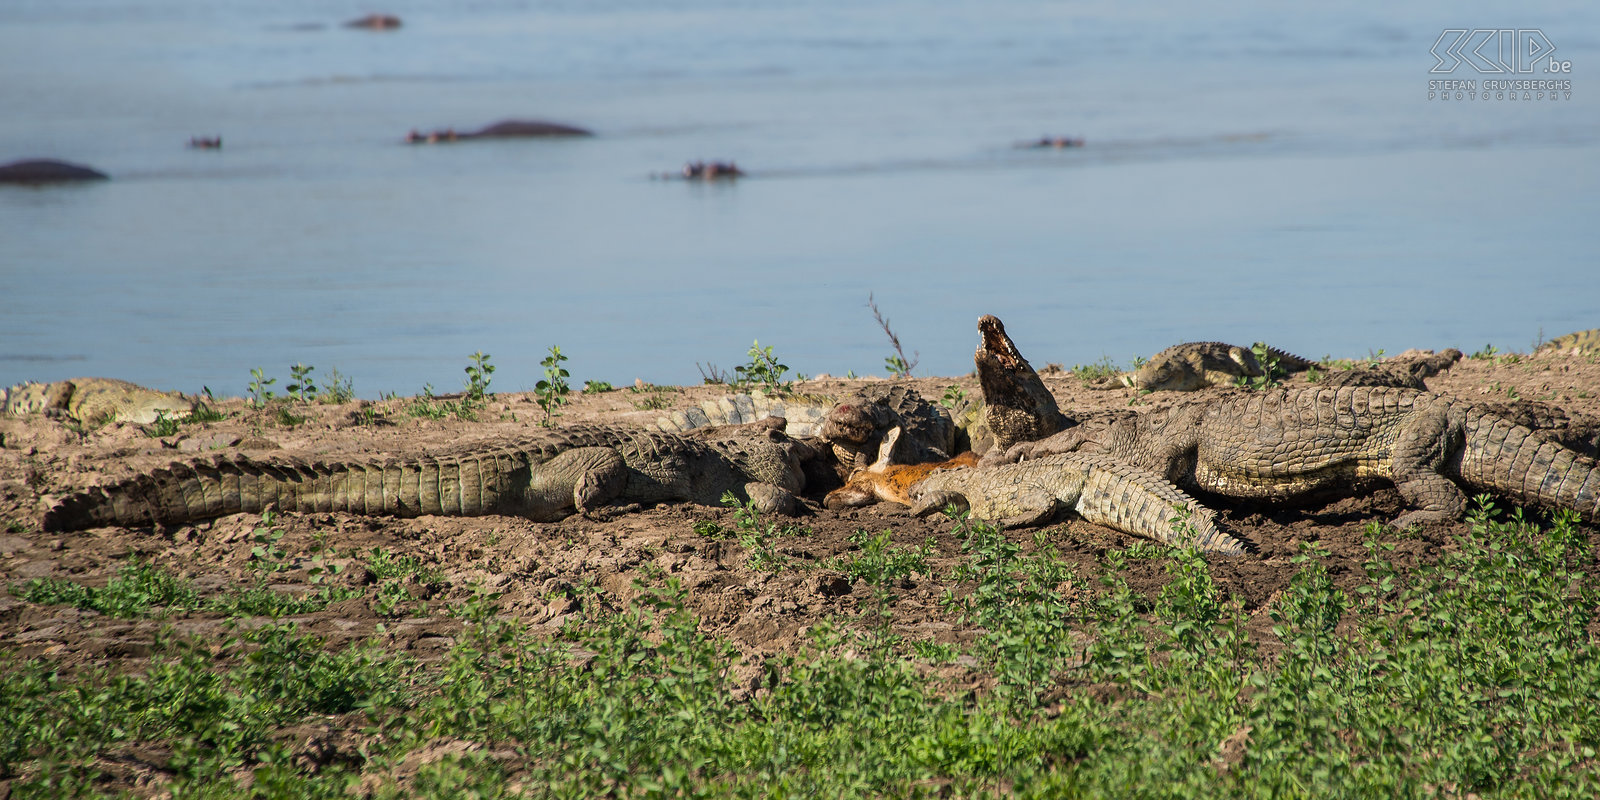 South Luangwa - Krokodillen met gedoode puku Onze tweede ochtend in South Luangwa eindigde met zeer boeiende en unieke taferelen. Aan de rivieroever vonden we een groep krokodillen die een volwassen mannelijke puku (antilope) aan het oppeuzelen waren. De puku werd waarschijnlijk ’s nachts gedood door een luipaard en het luipaard heeft te lang gewacht om zijn prooi in de struiken te slepen. Krokodillen die een zeer sterk reukvermogen hebben, hadden de gedode puku kunnen veroveren. Het was zeer indrukwekkend om de krokodillen stukken vlees te zien afbijten en doorslikken. Door zich volledig om te draaien konden ze grote stukken vlees afscheuren. Stefan Cruysberghs